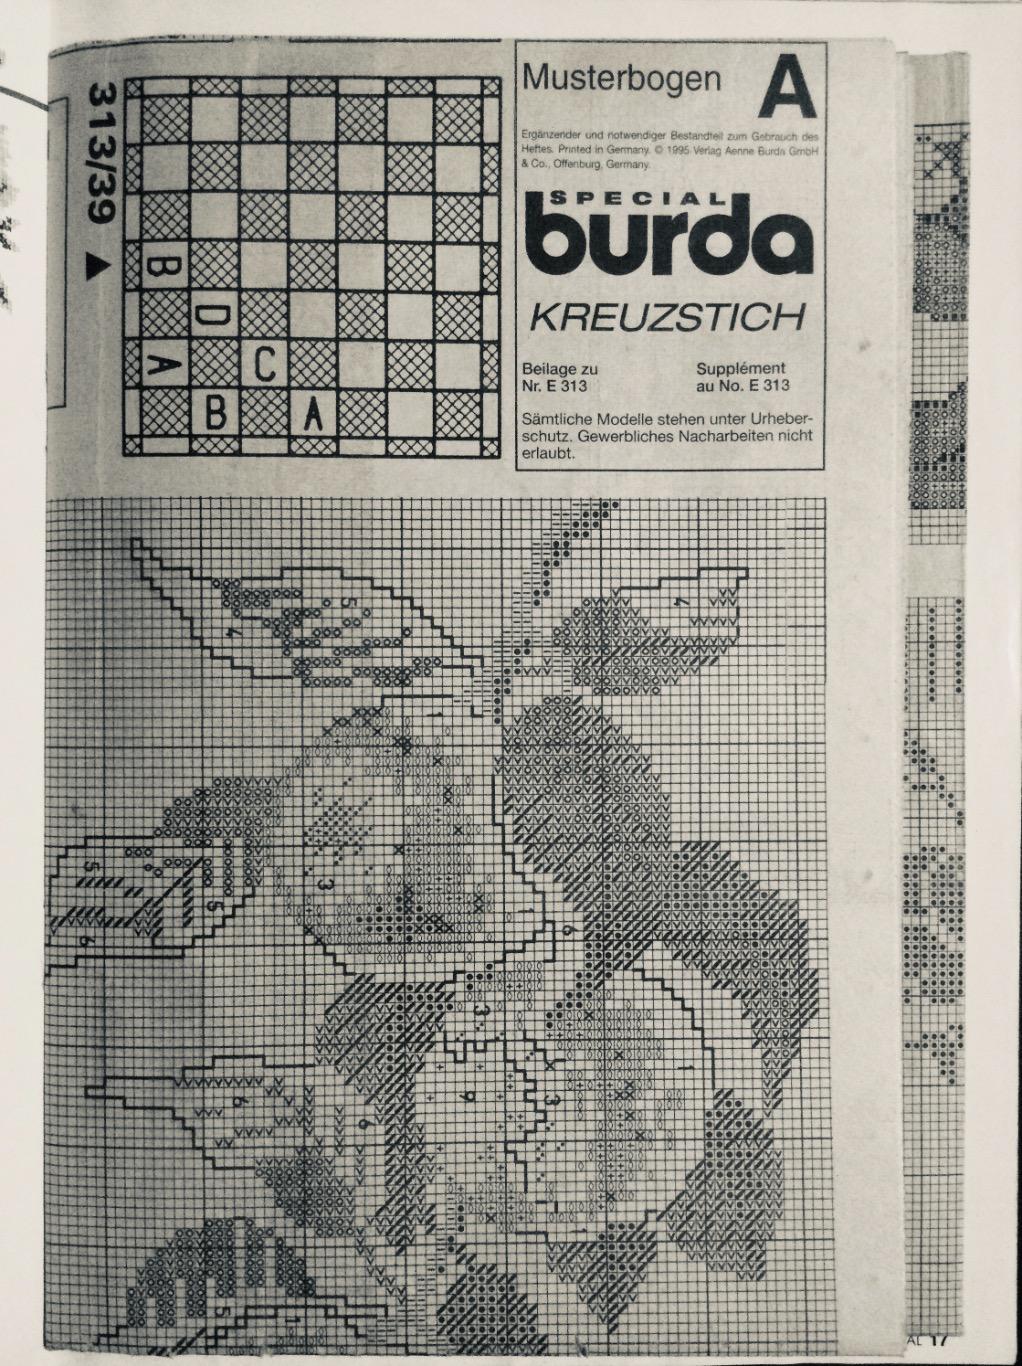 BURDA. Вышивка крестом 1995 6